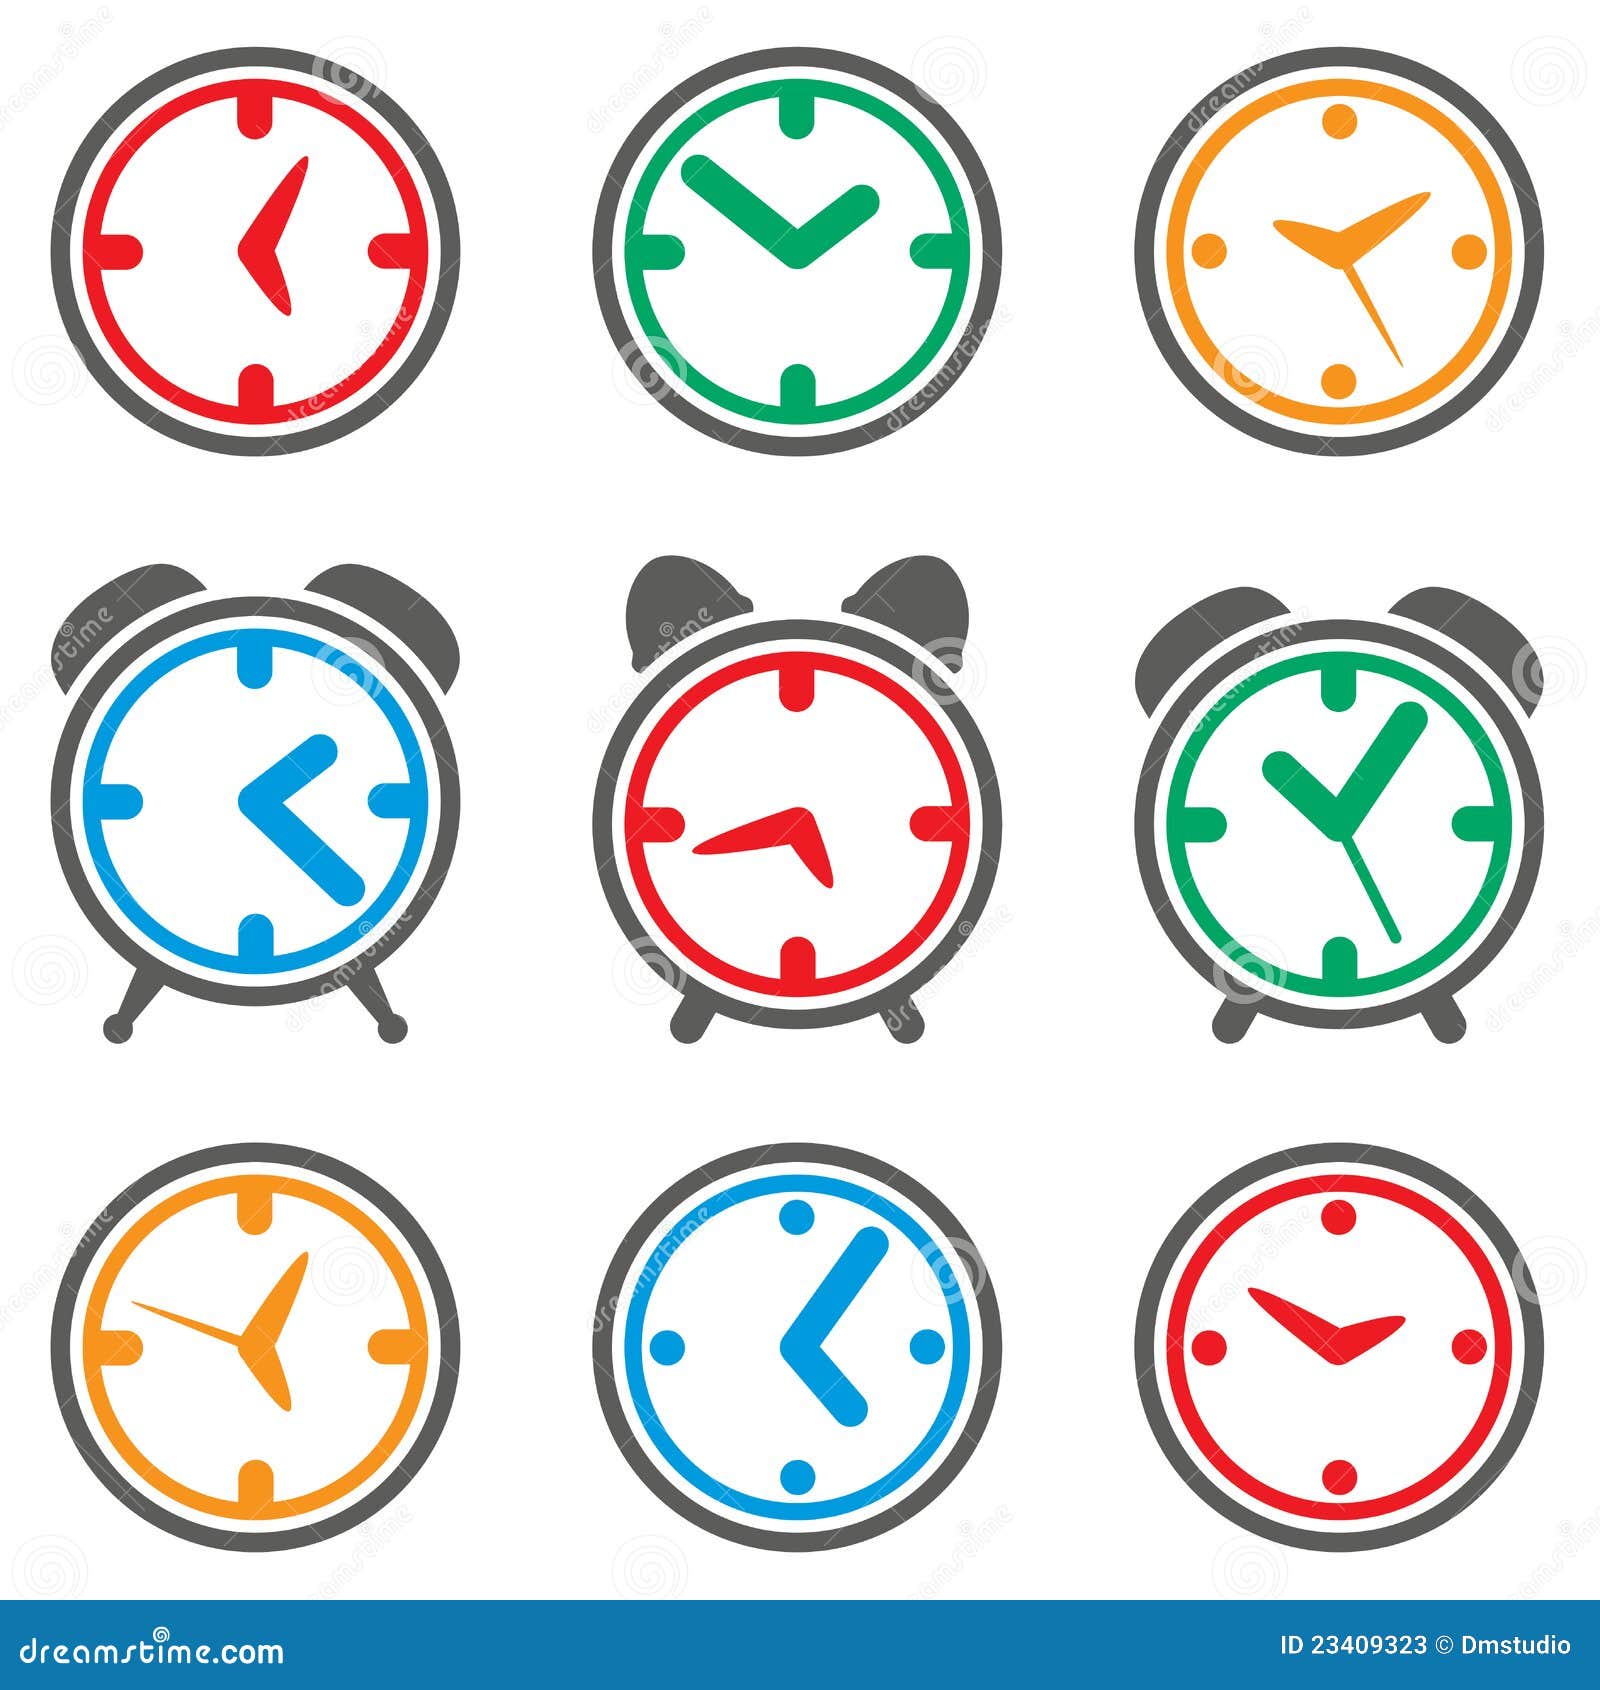 Знаки на часах. Символы на часах здоровья. Пуговичница картинки вектор. Графическое изображение название группы символика часов и 2 спутника.